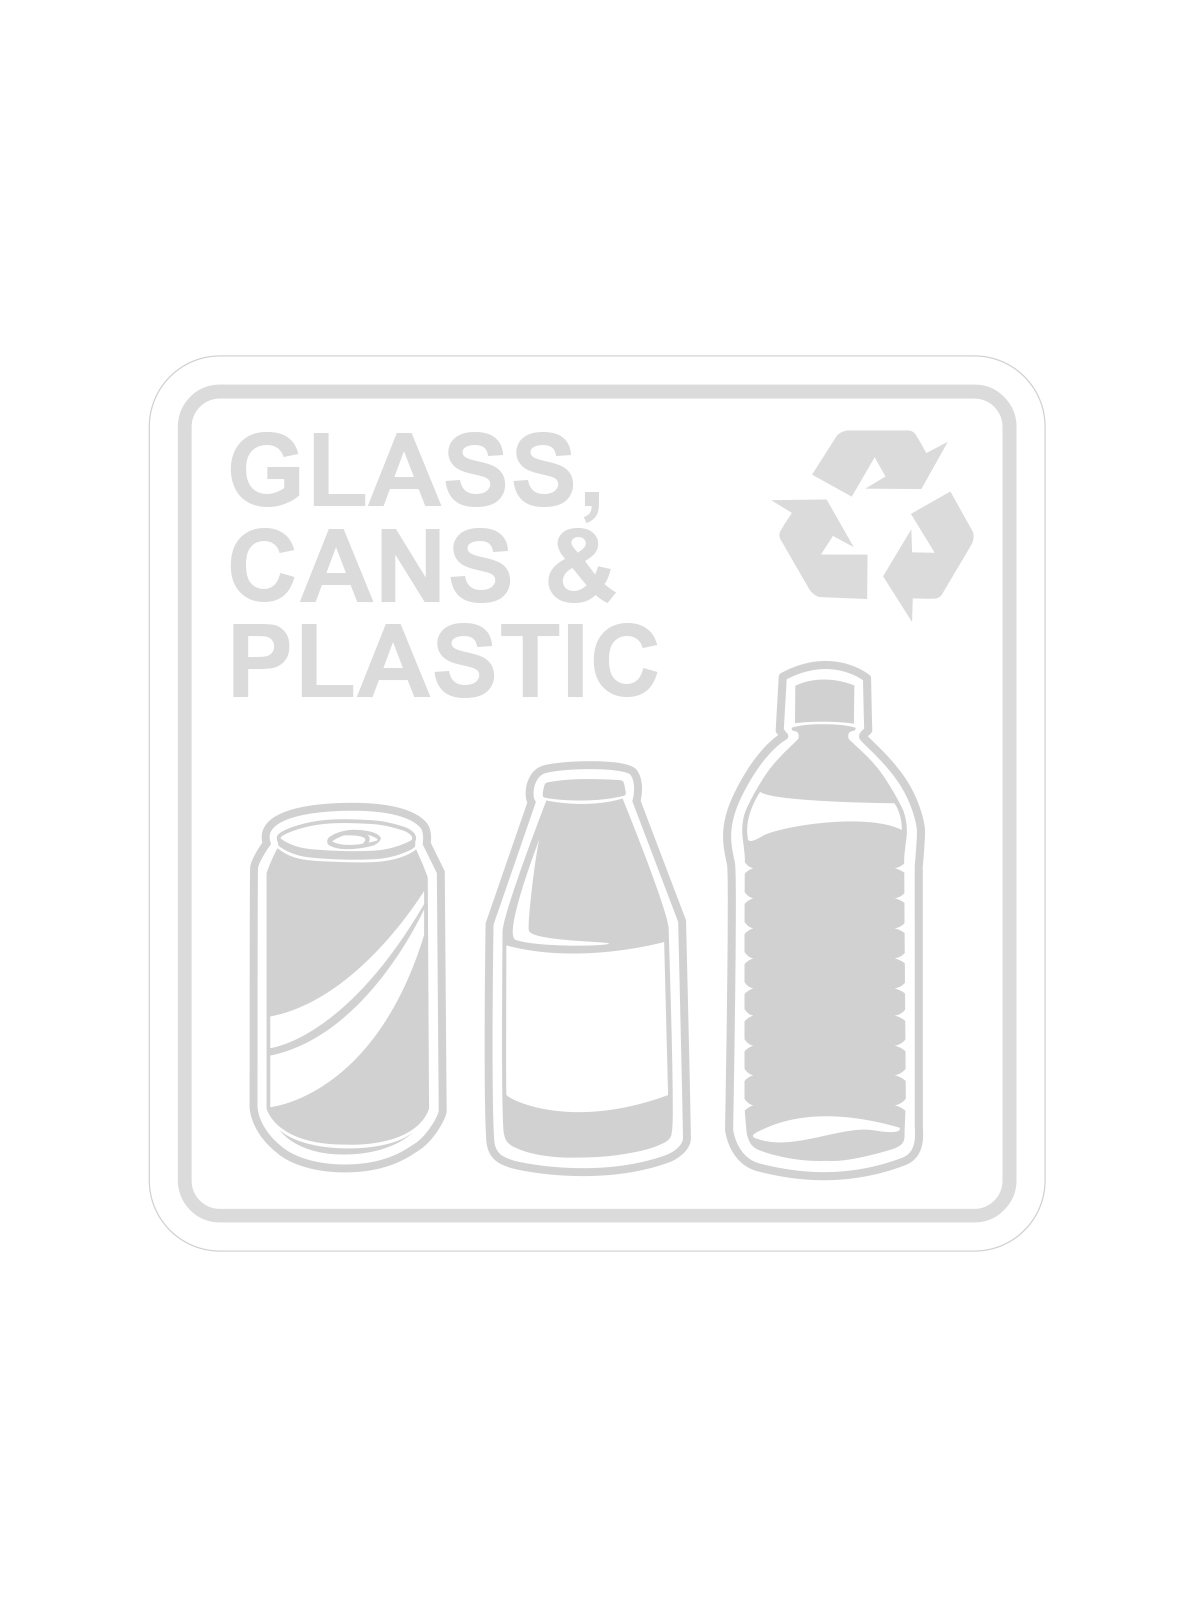 废物观察者 - 标签 - 玻璃，罐头和塑料 - 清晰白色标题=